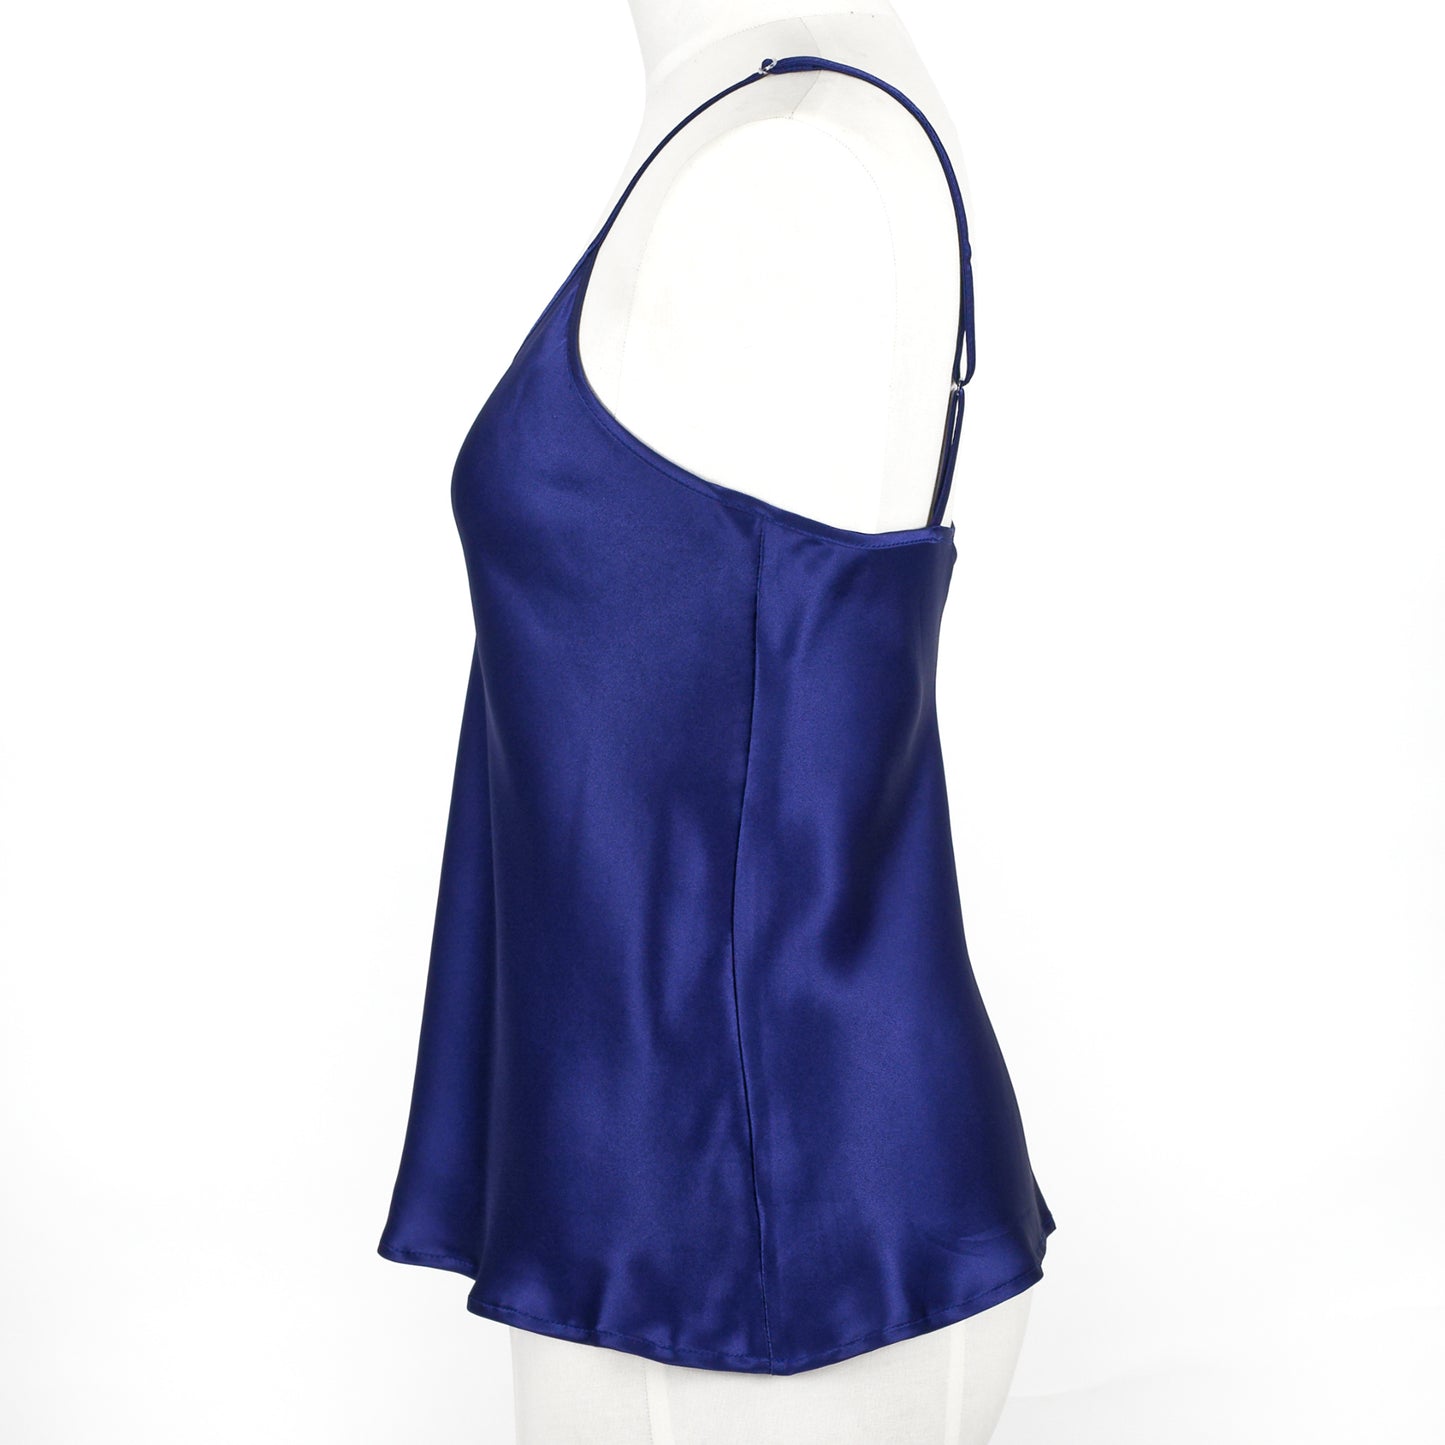 Silk camisole in dark blue from Carmen Kirstein